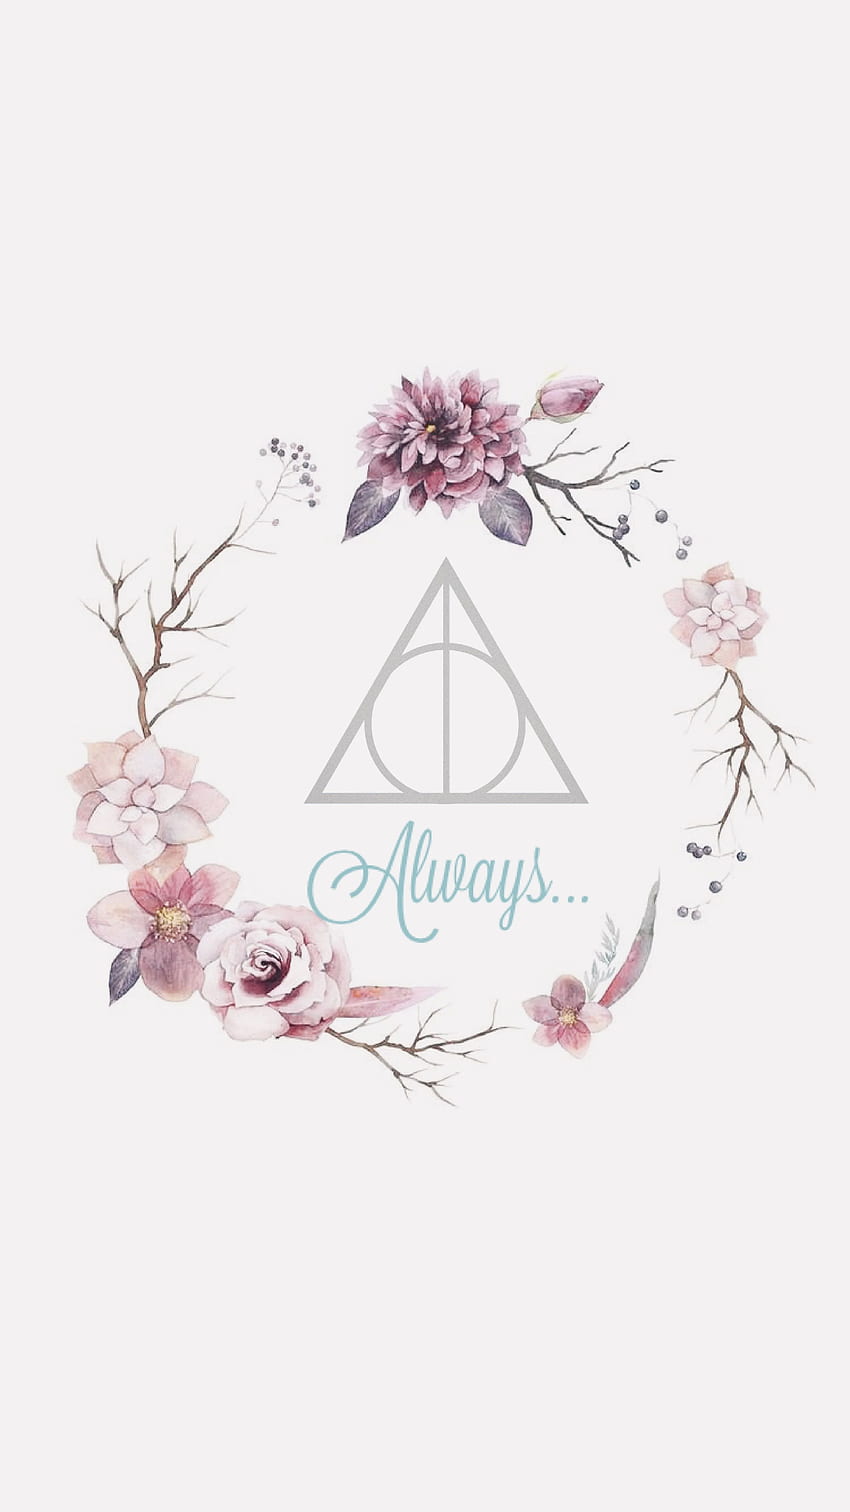 Hình ảnh màu hồng tươi của bộ đĩa Always Harry Potter kết hợp với hình ảnh hoa xinh xắn sẽ làm cho bạn cảm thấy thật dễ chịu và thích thú. Hãy xem hình ảnh để đón nhận sự lưu giữ một giá trị quý giá của thế giới phù thủy Harry Potter.